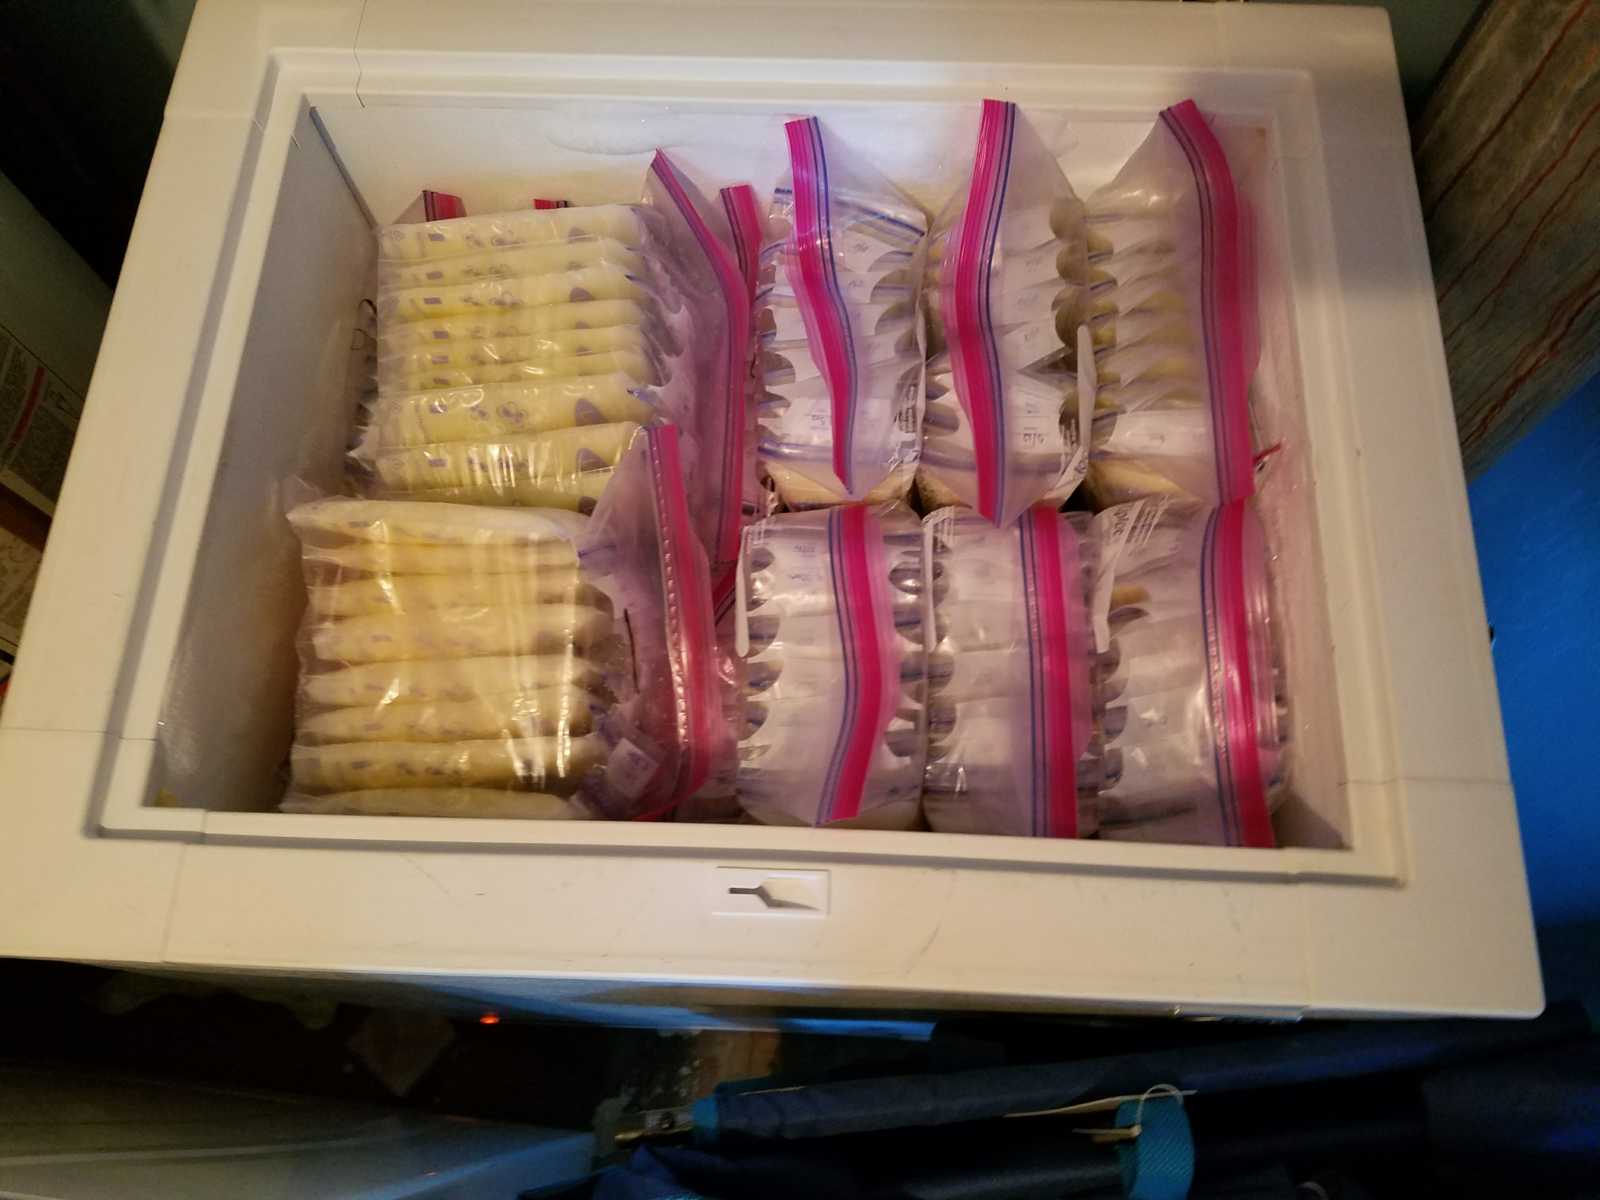 Freezer full of Ziploc bags containing frozen breastmilk